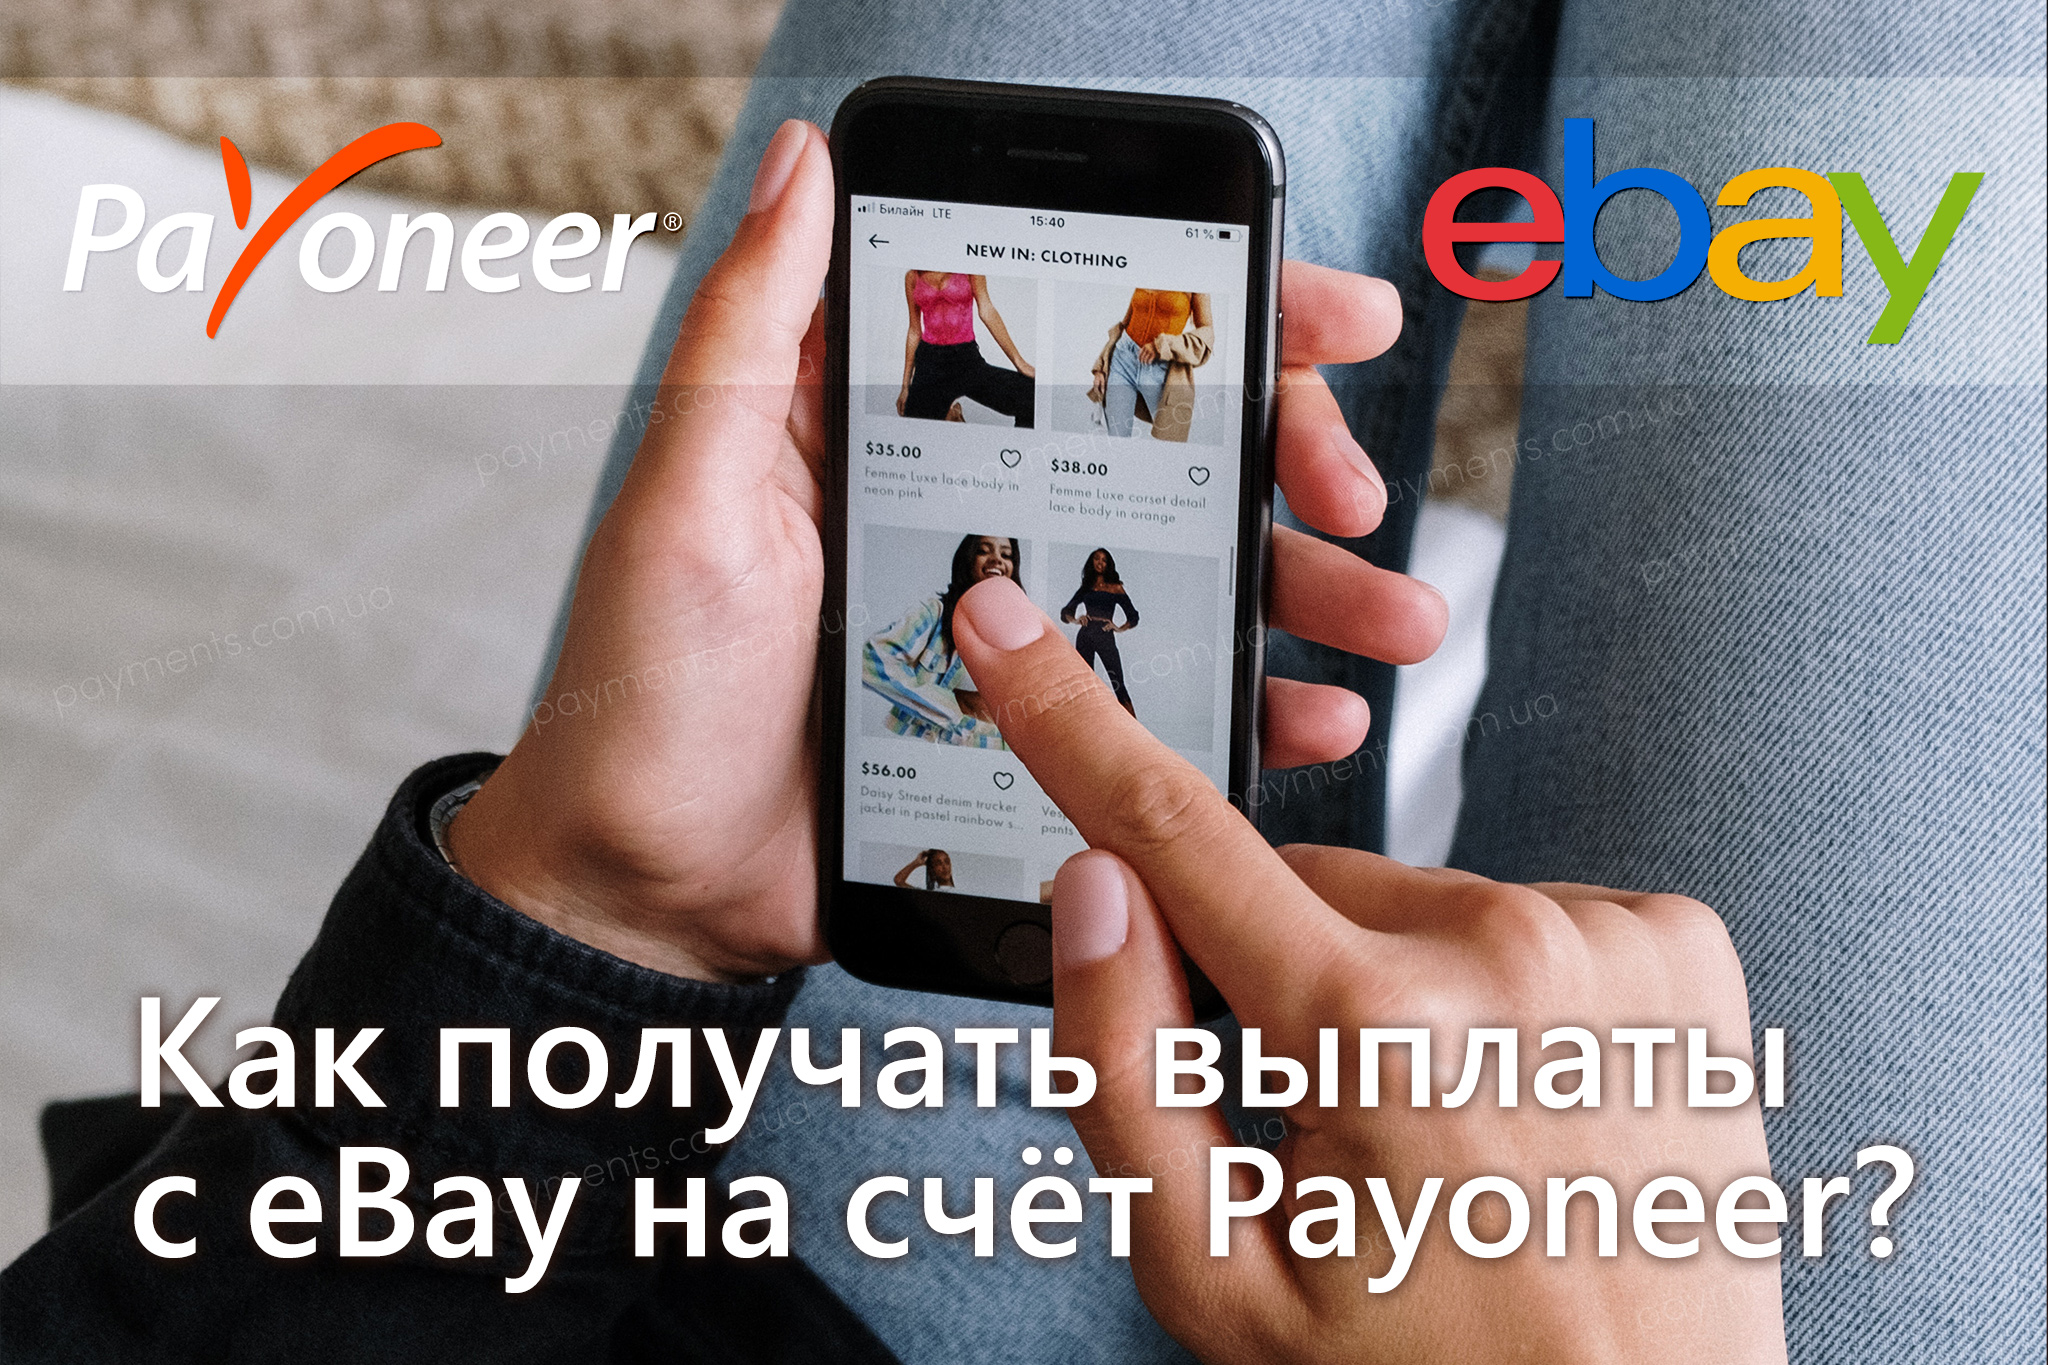 Как получать выплаты из eBay на Payoneer